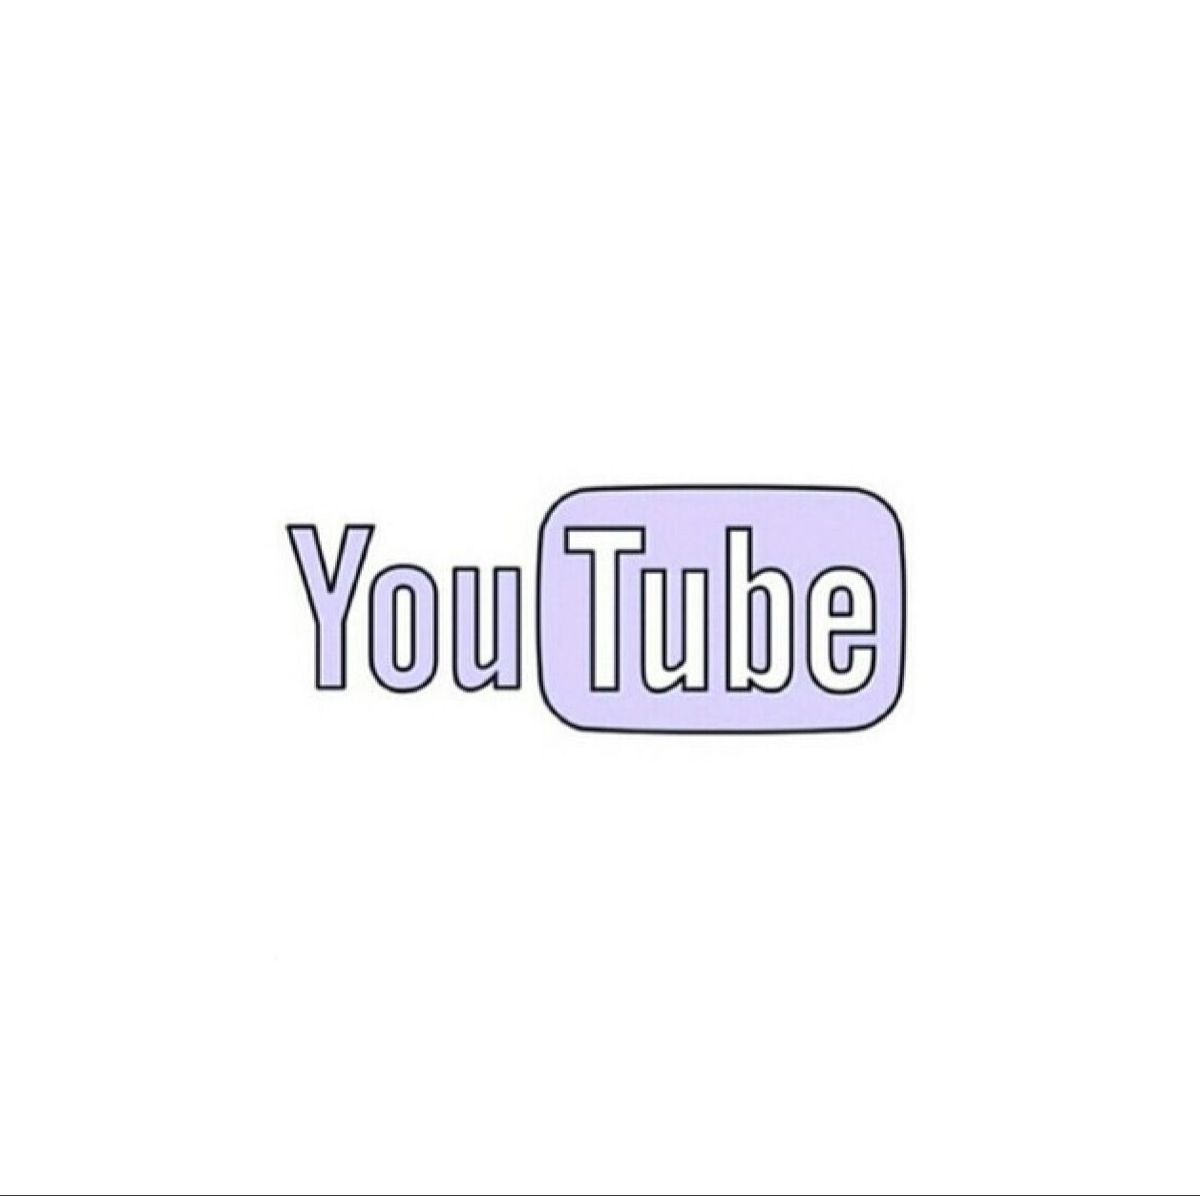 YouTube video. Youtube logo, Snapchat logo, Instagram logo